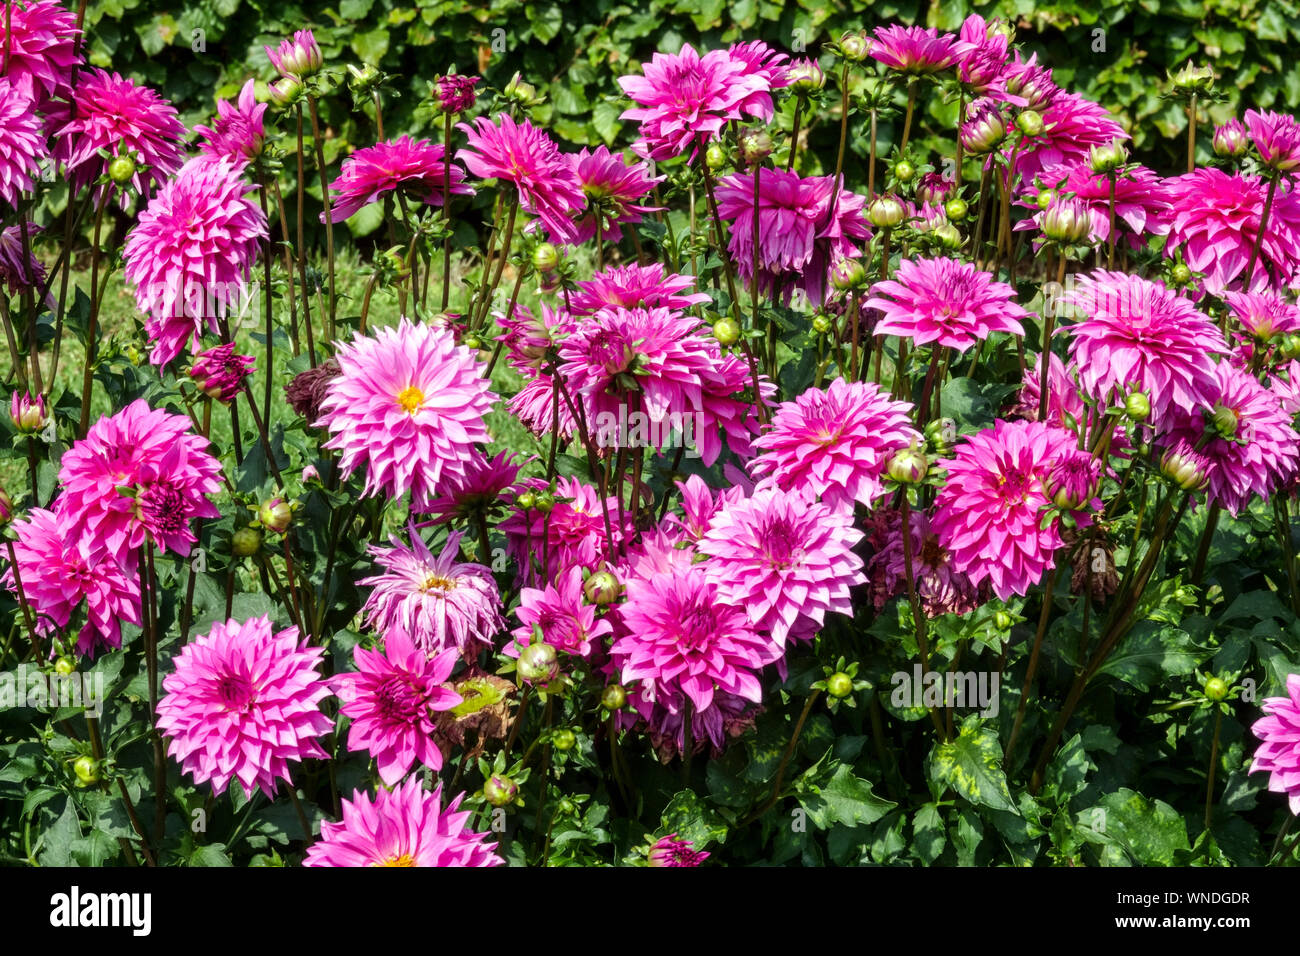 Dahlia fleurs jardin bordure de lit de fleurs, Dahlia 'Betelgeuse' Pink Dahlias lit de fleurs dahlias Banque D'Images